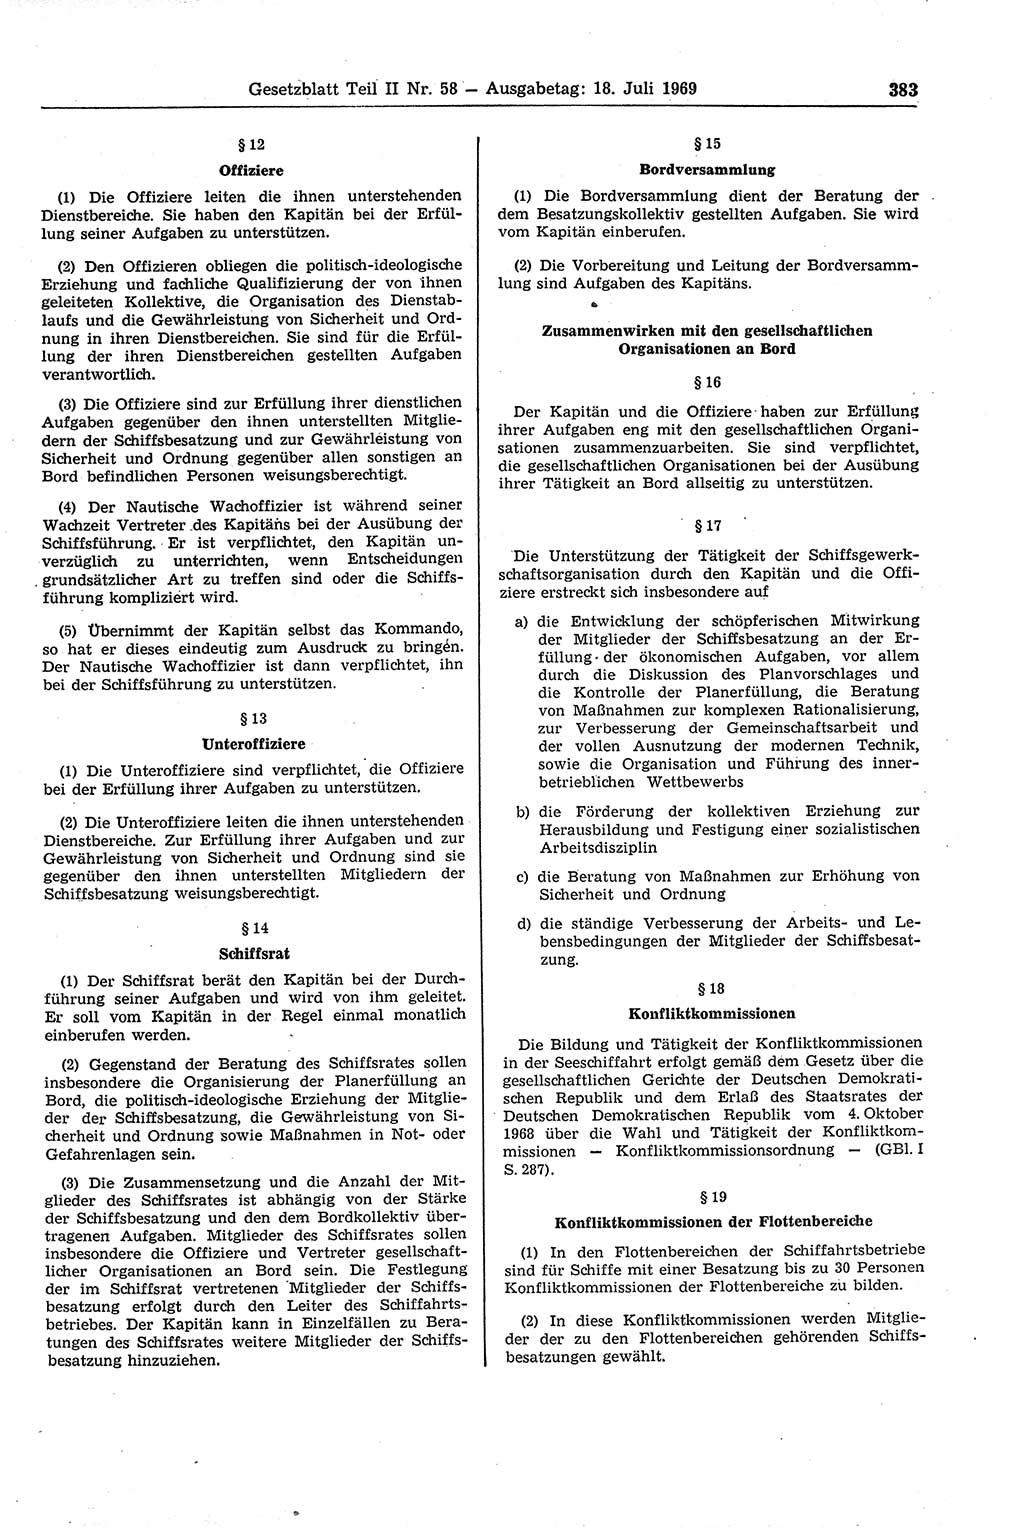 Gesetzblatt (GBl.) der Deutschen Demokratischen Republik (DDR) Teil ⅠⅠ 1969, Seite 383 (GBl. DDR ⅠⅠ 1969, S. 383)